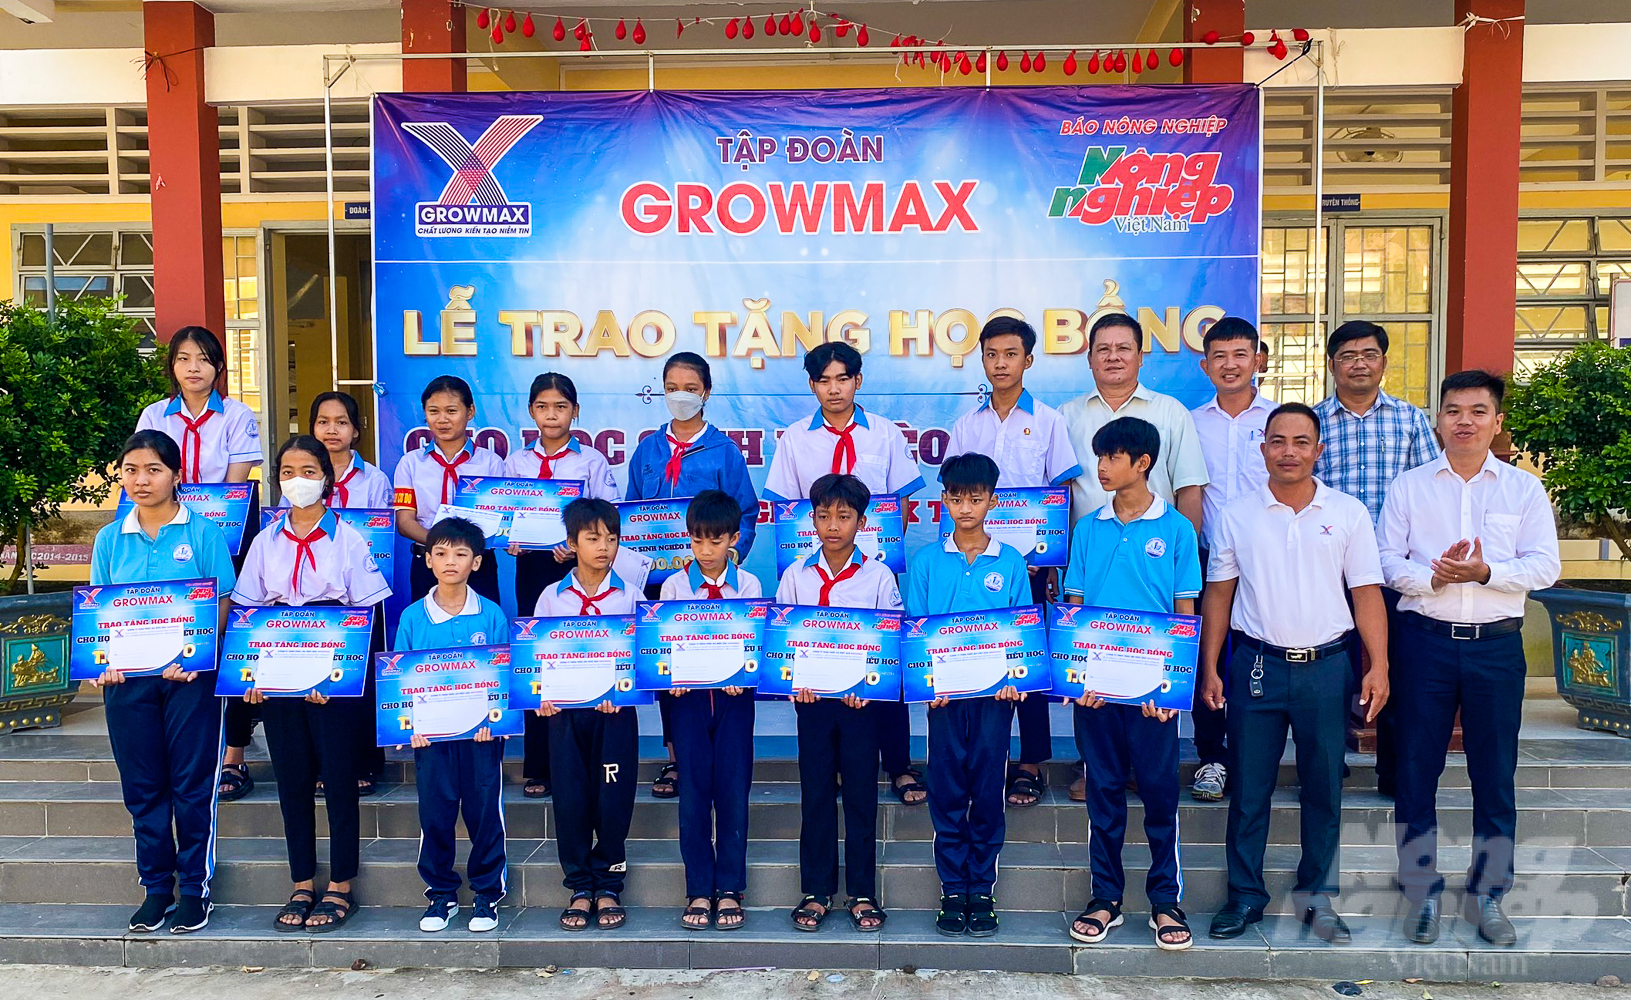 Tại Trường THCS Trung Bình, huyện Trần Đề, tỉnh Sóc Trăng, 15 suất học bổng là tấm lòng của các cán bộ, kỹ sư Tập đoàn GrowMax gửi đến các em học sinh nghèo, hoàn cảnh khó khăn.